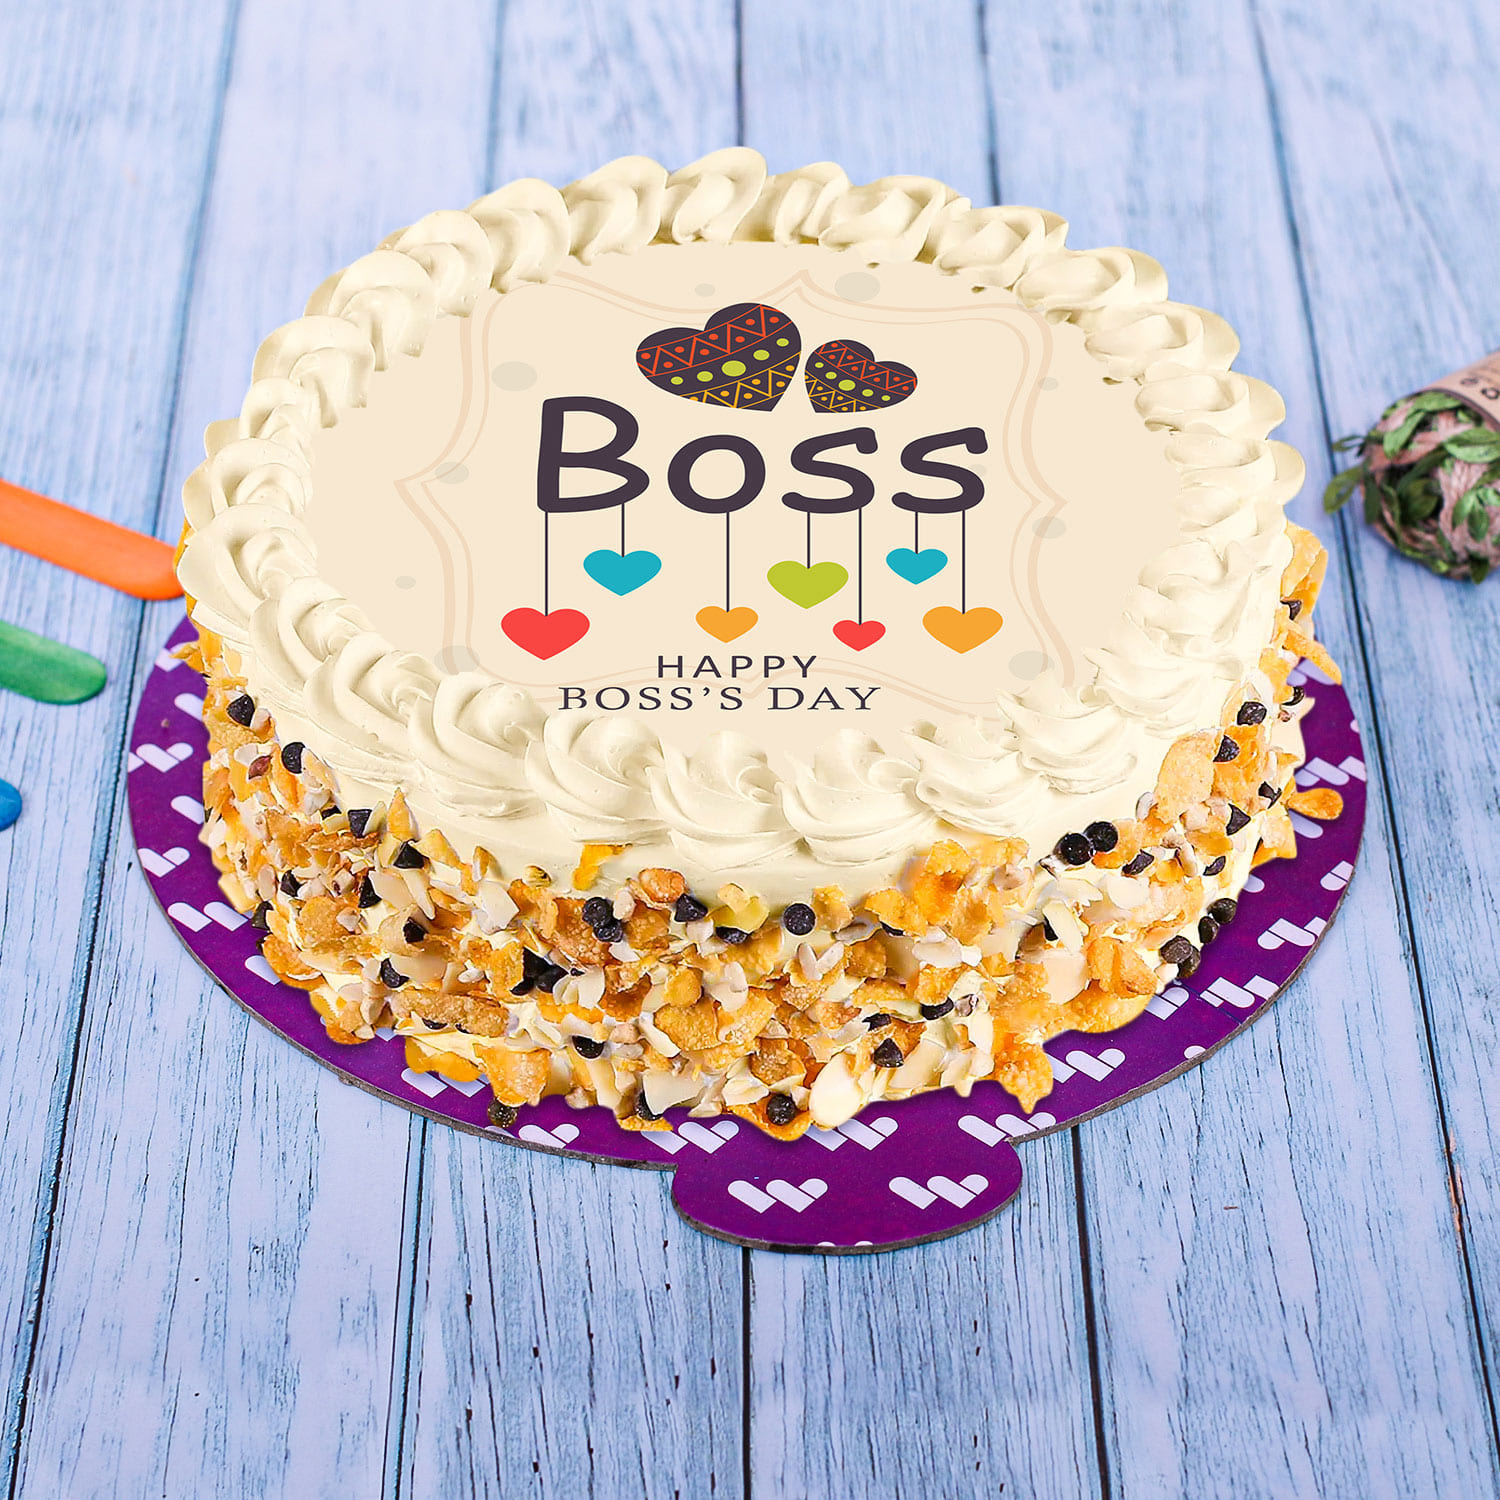 Boss Baby Cake For 1st Birthday - Opulence Bakery